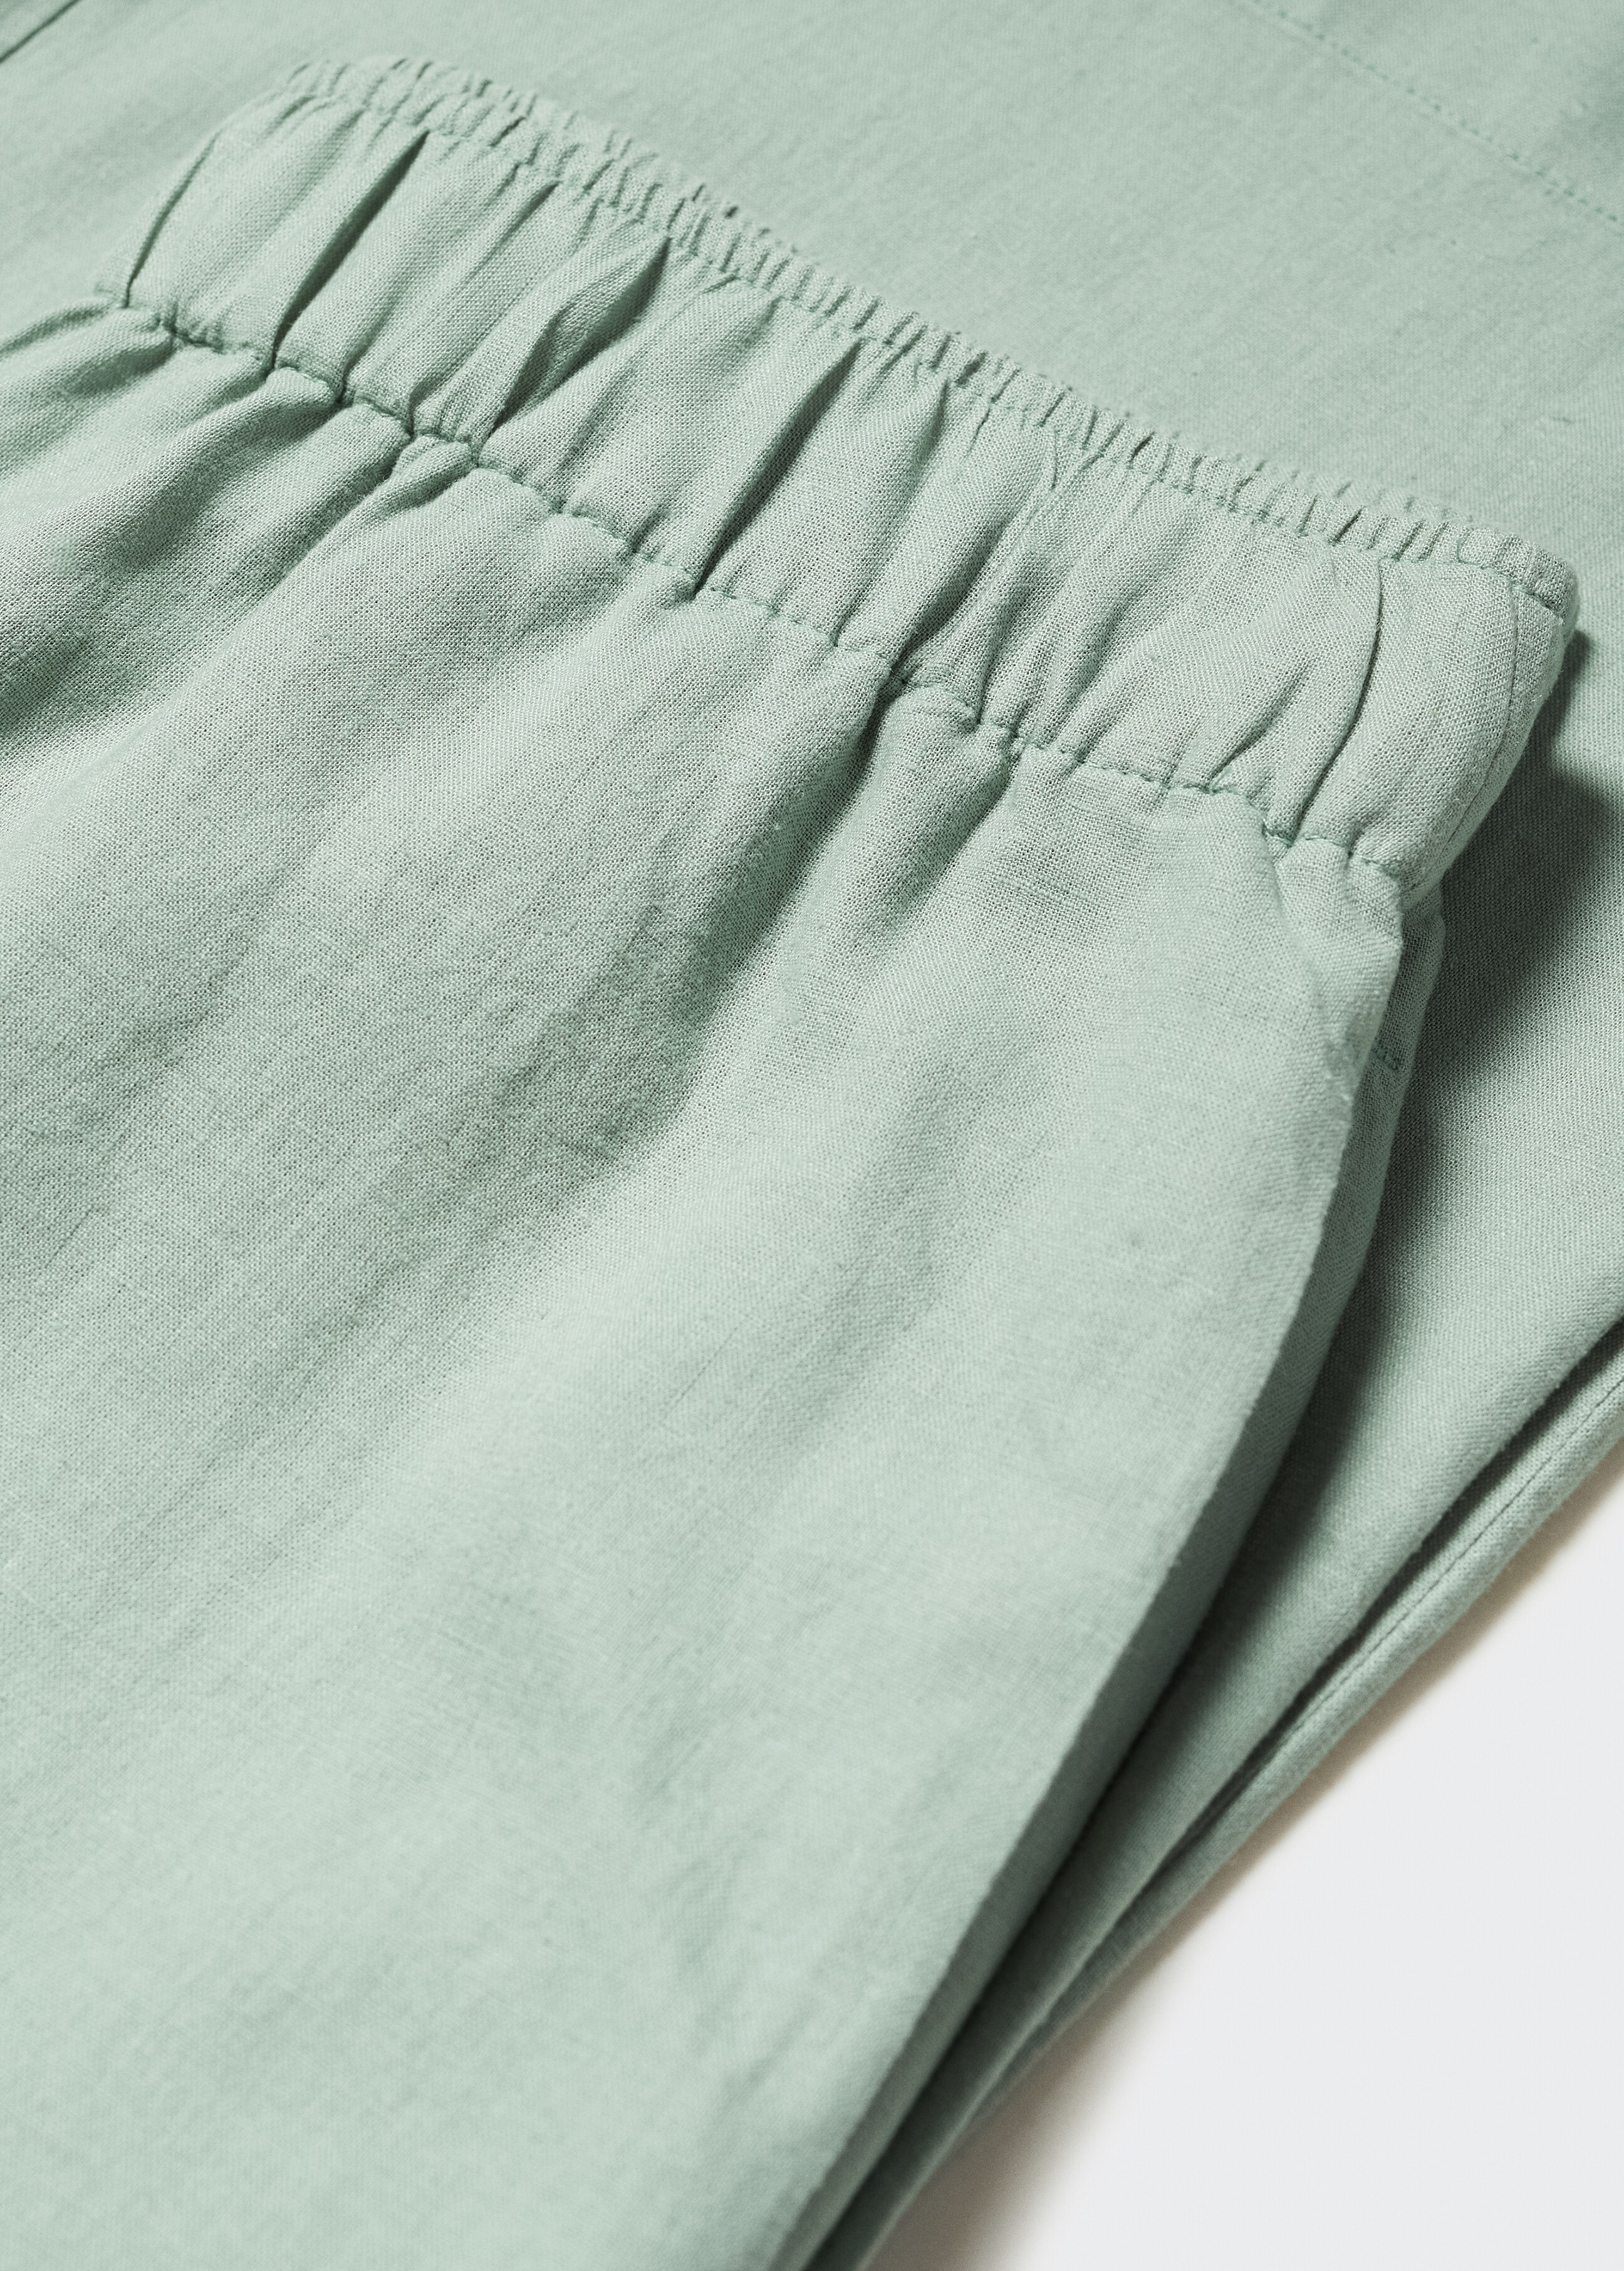 Pantalón culotte lino - Detalle del artículo 8